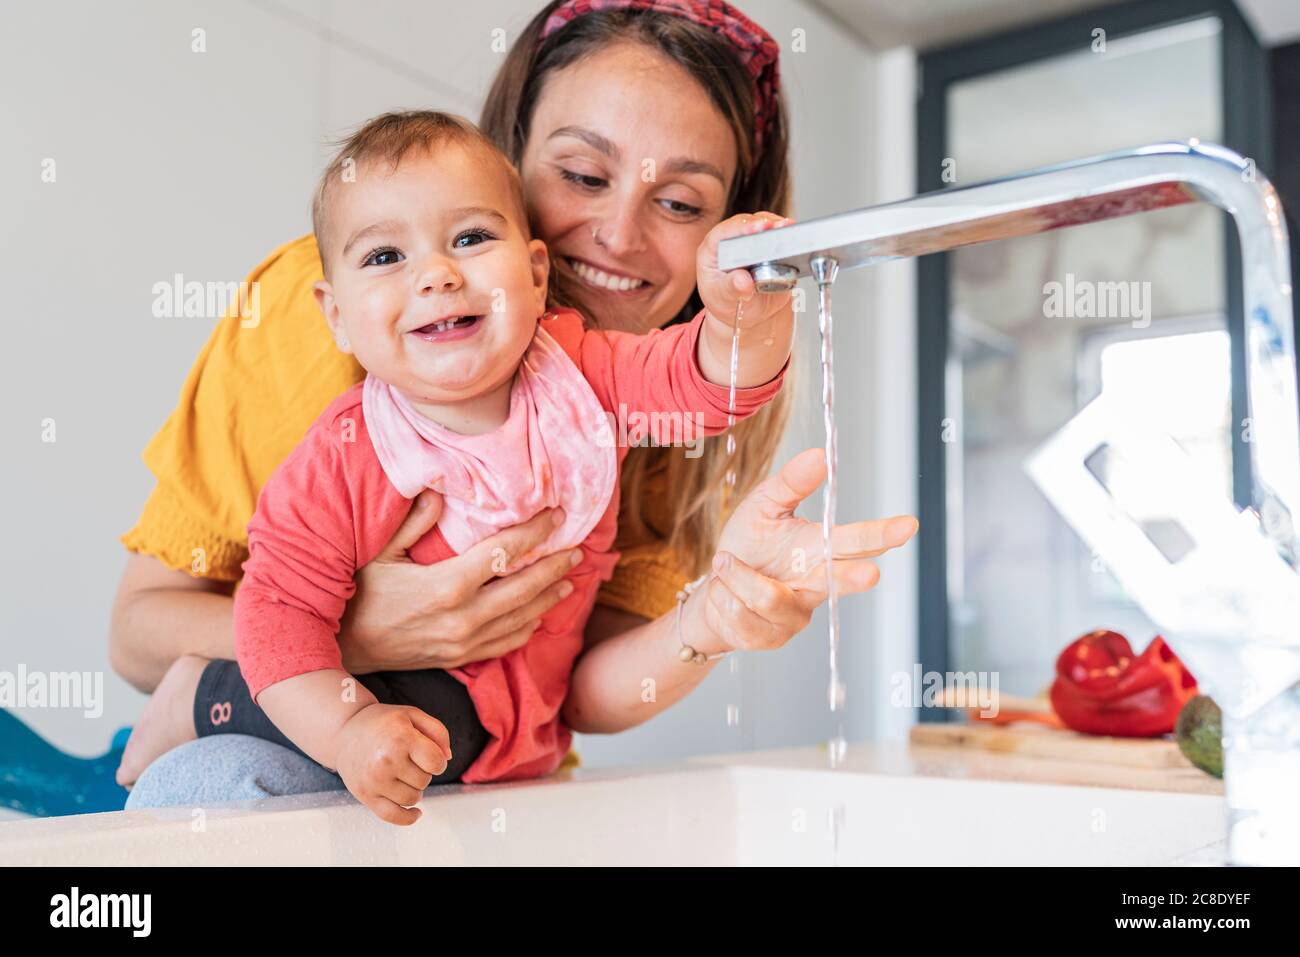 Madre sorridente e bambina simpatica che gioca con l'acqua che cade dal rubinetto nel lavandino della cucina Foto Stock